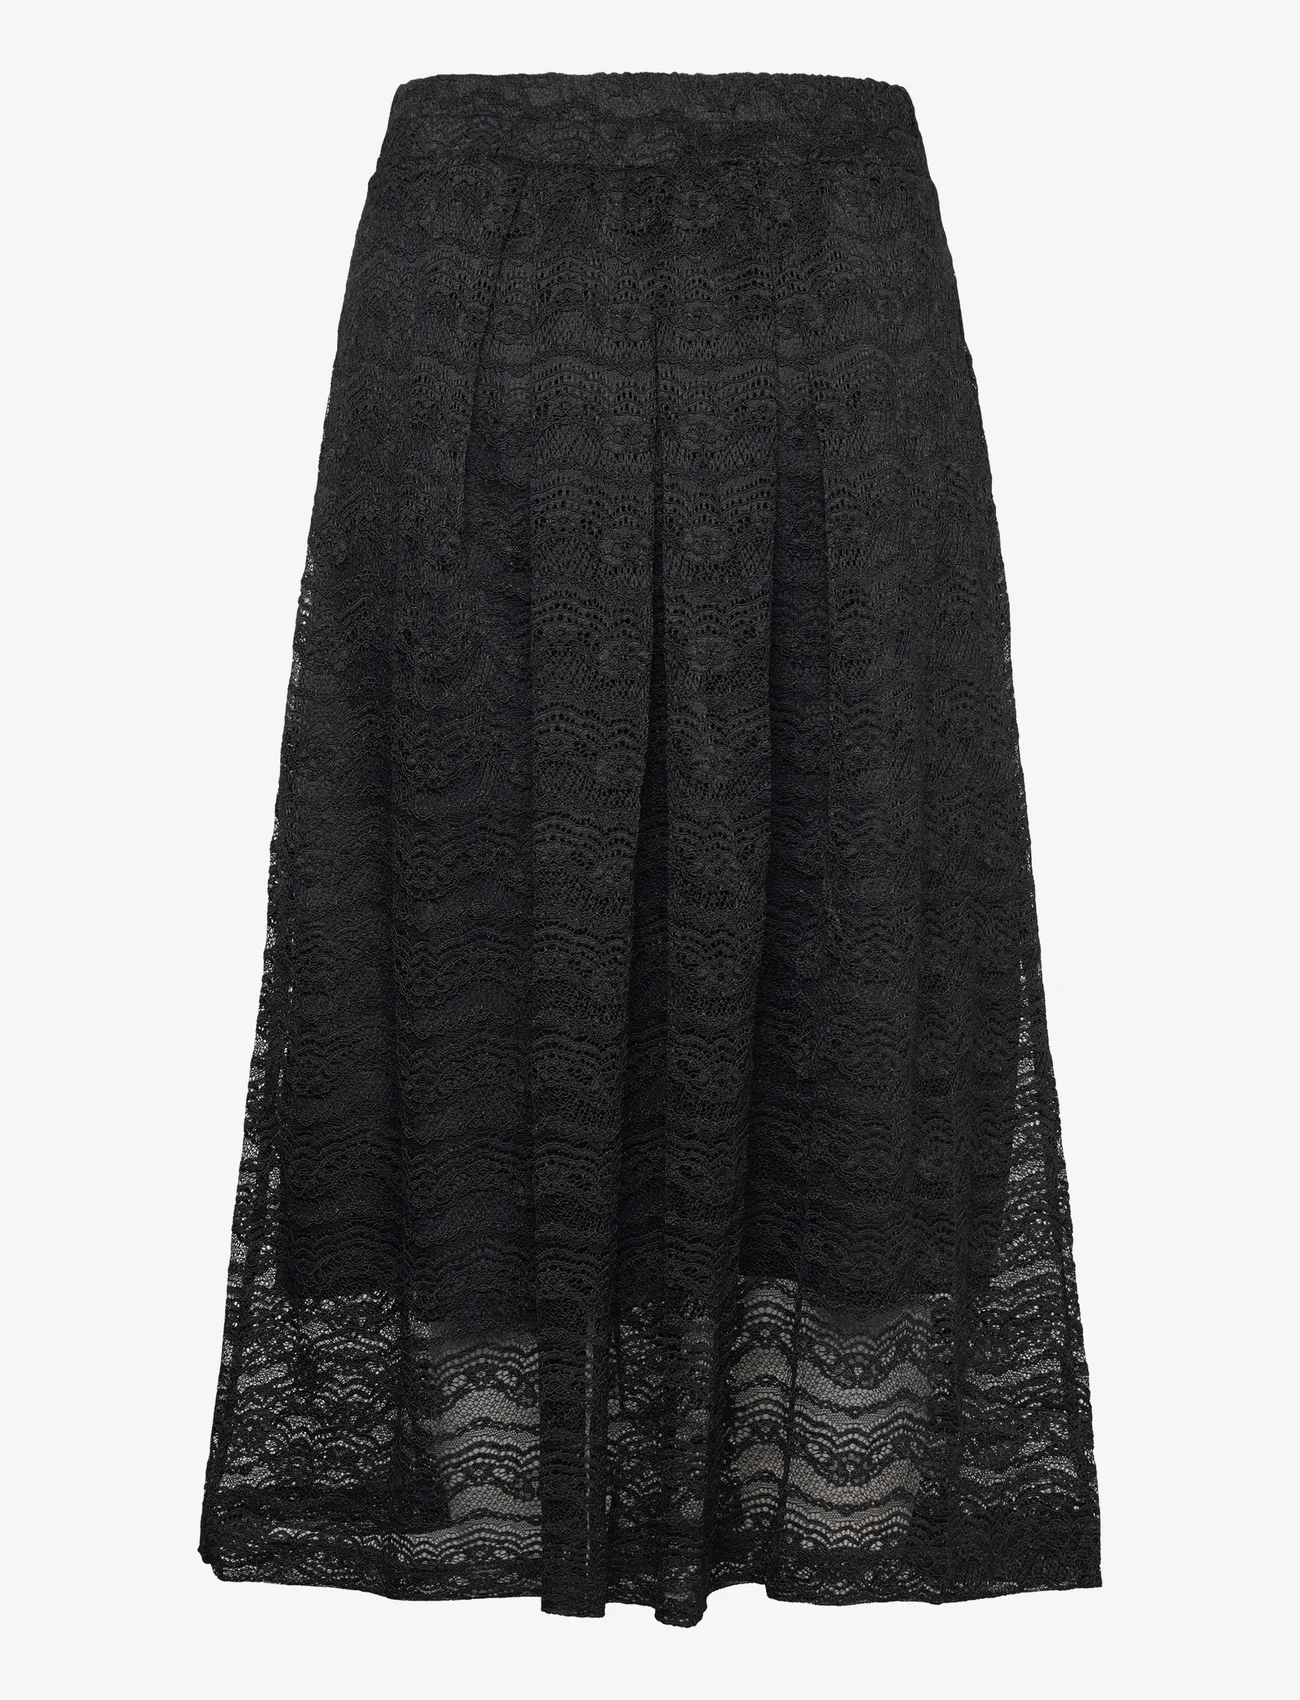 Lollys Laundry - Sinaloa Skirt - midi kjolar - black - 1